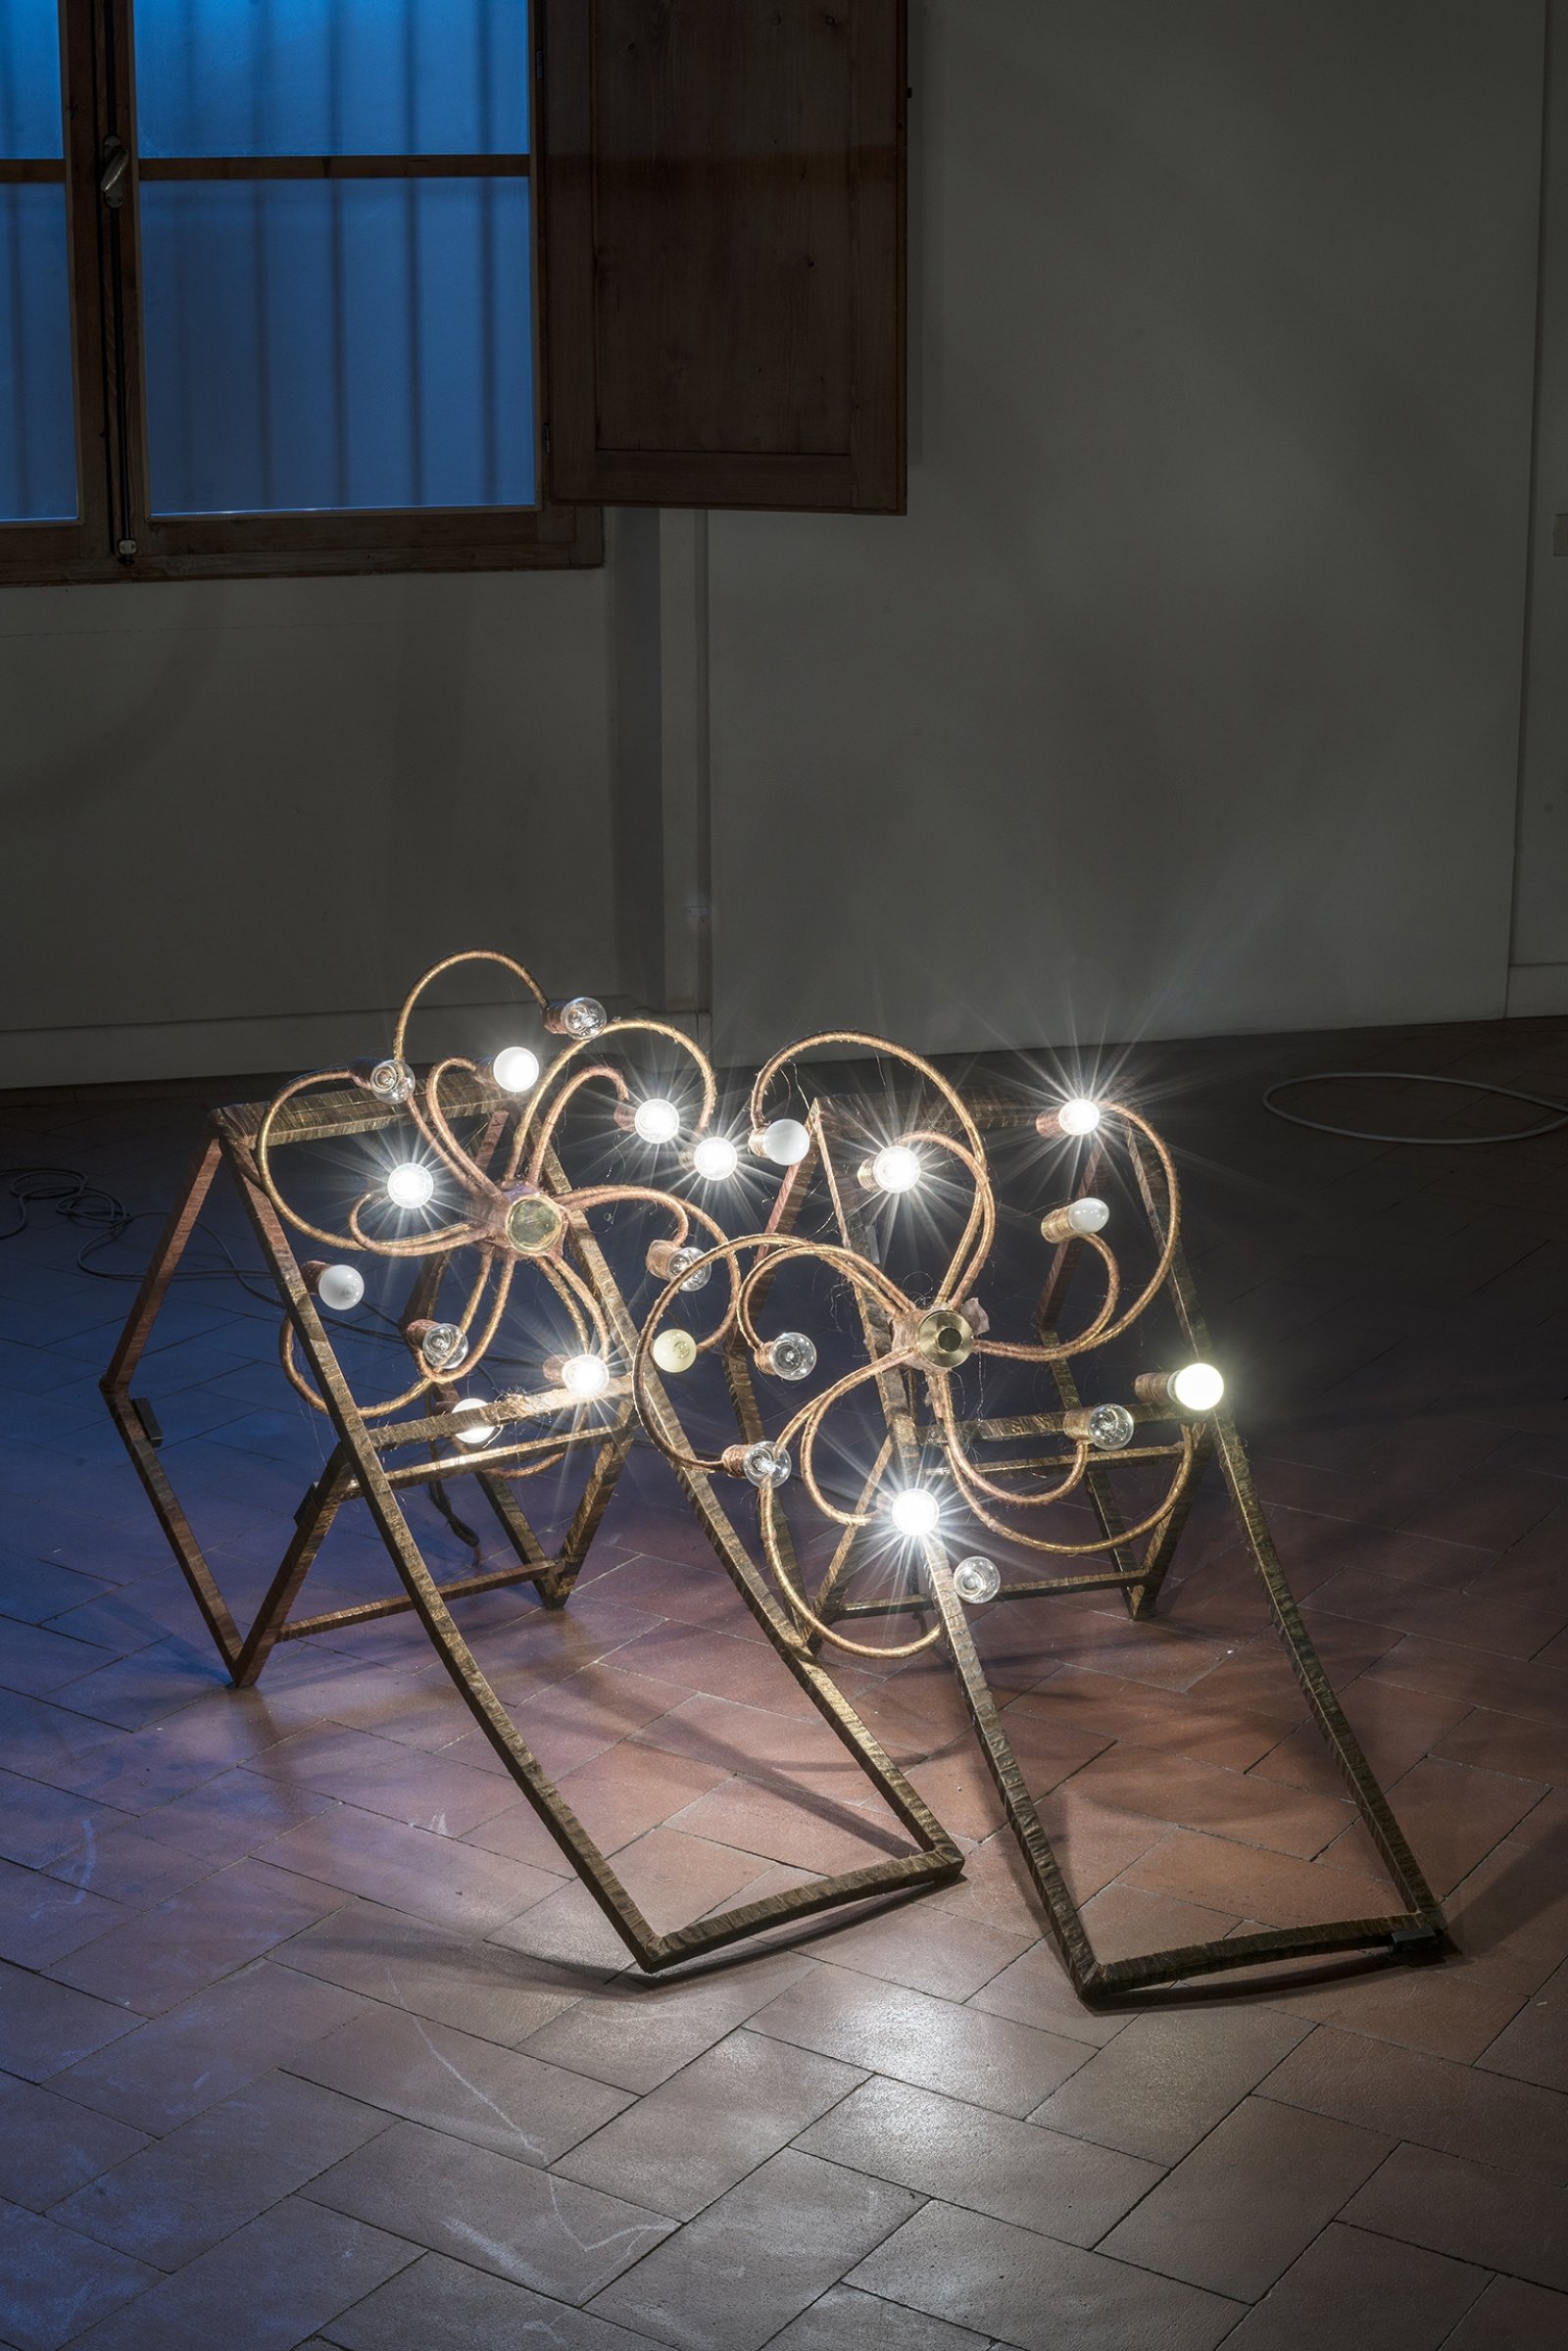 Rochelle Goldberg, Beam of light (I, II), 2018, chairs, brass lamps, polyester organza, 24 x 31 x 47 in. (60 x 78 x 120 cm). Installation view, Casa del Sol, Casa Masaccio, San Giovanni Valdarno, Italy, 2018